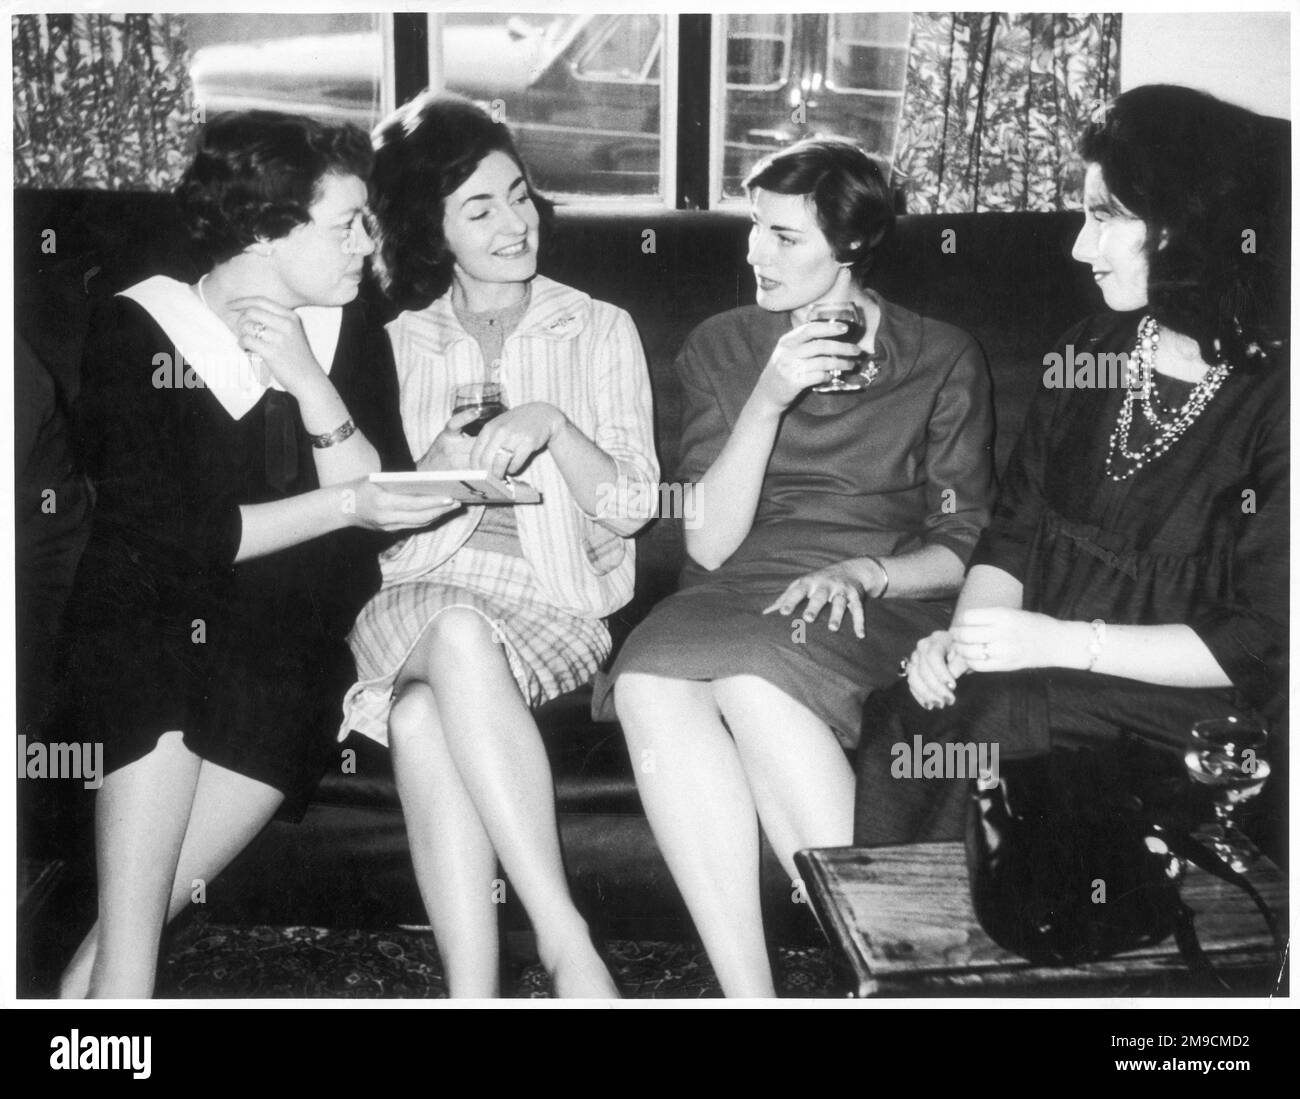 Quatre jeunes femmes passent autour d'une boîte de chocolats et partagent un verre de vin civilisé dans un pub. Banque D'Images